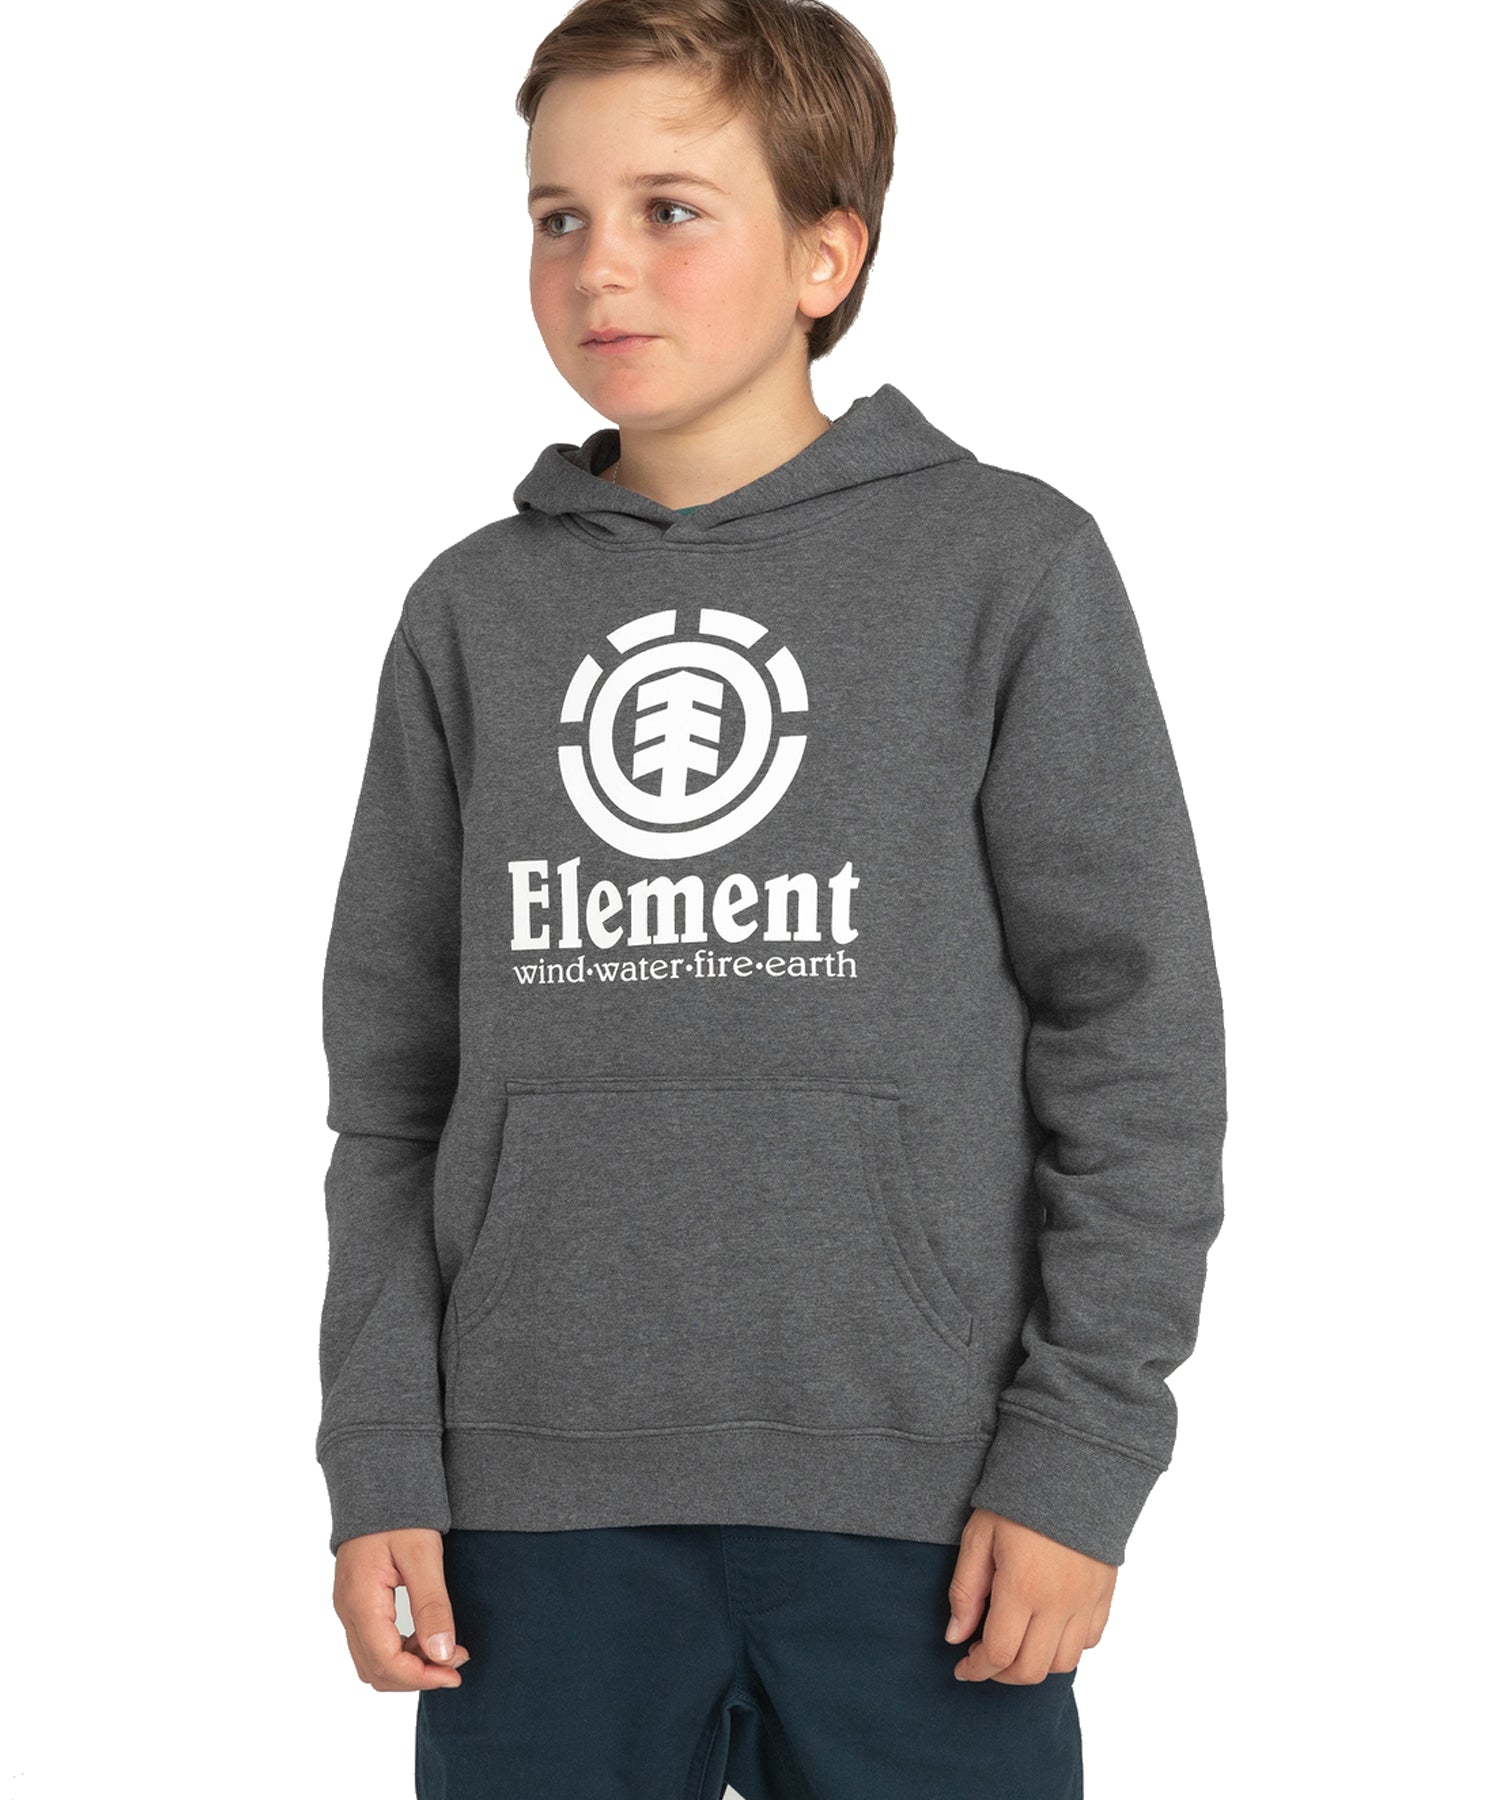 element-vertical-hood-kids-grey-sudadera-niños-algodón-terry frances-logo grande en el pecho.